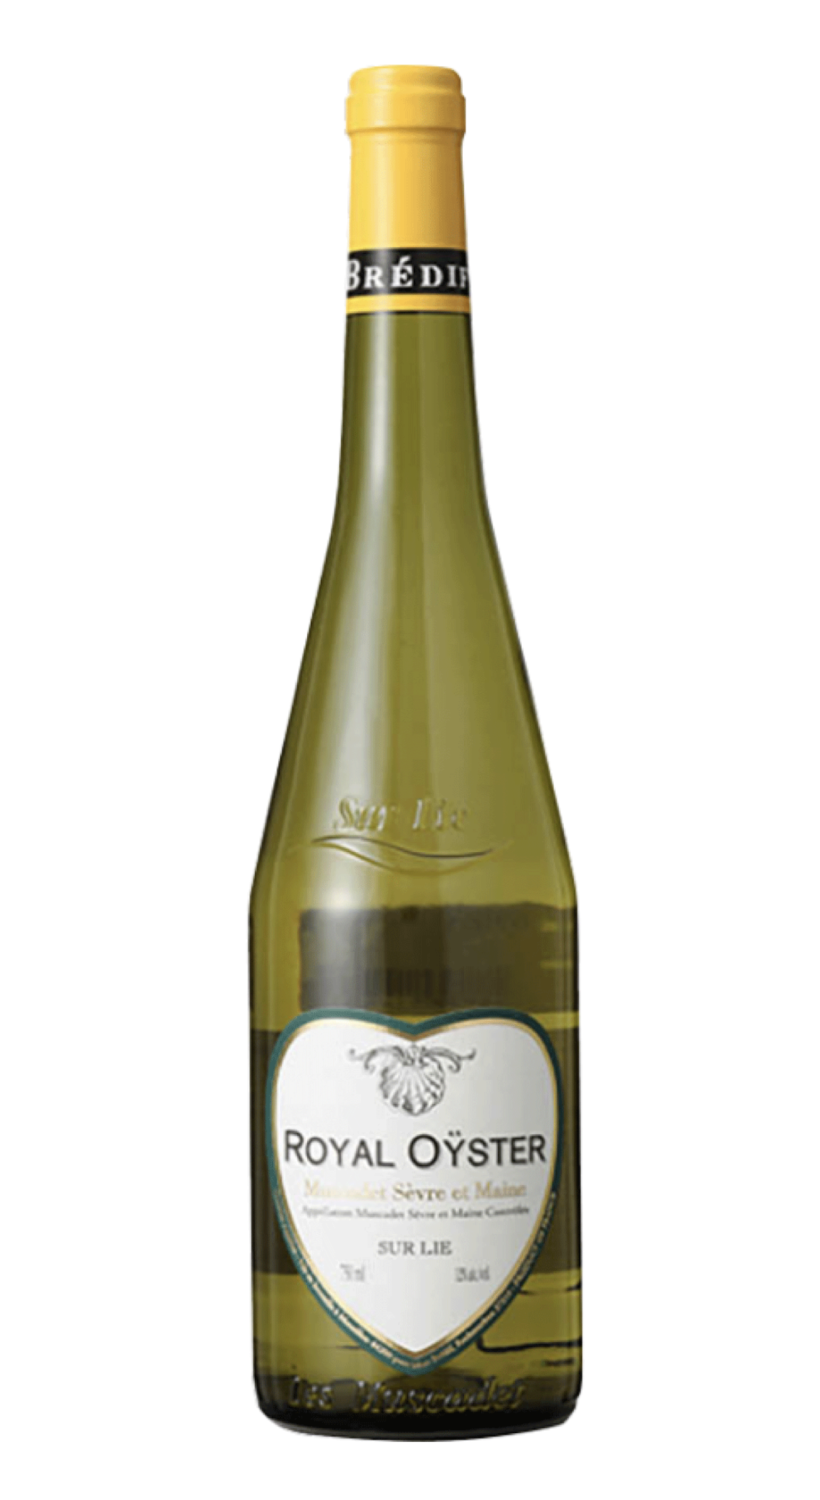 Royal Oyster 2019 Muscadet Sèrve et Maine Landreau (Melon de Bourgogne) Maison Brèdif-75cl